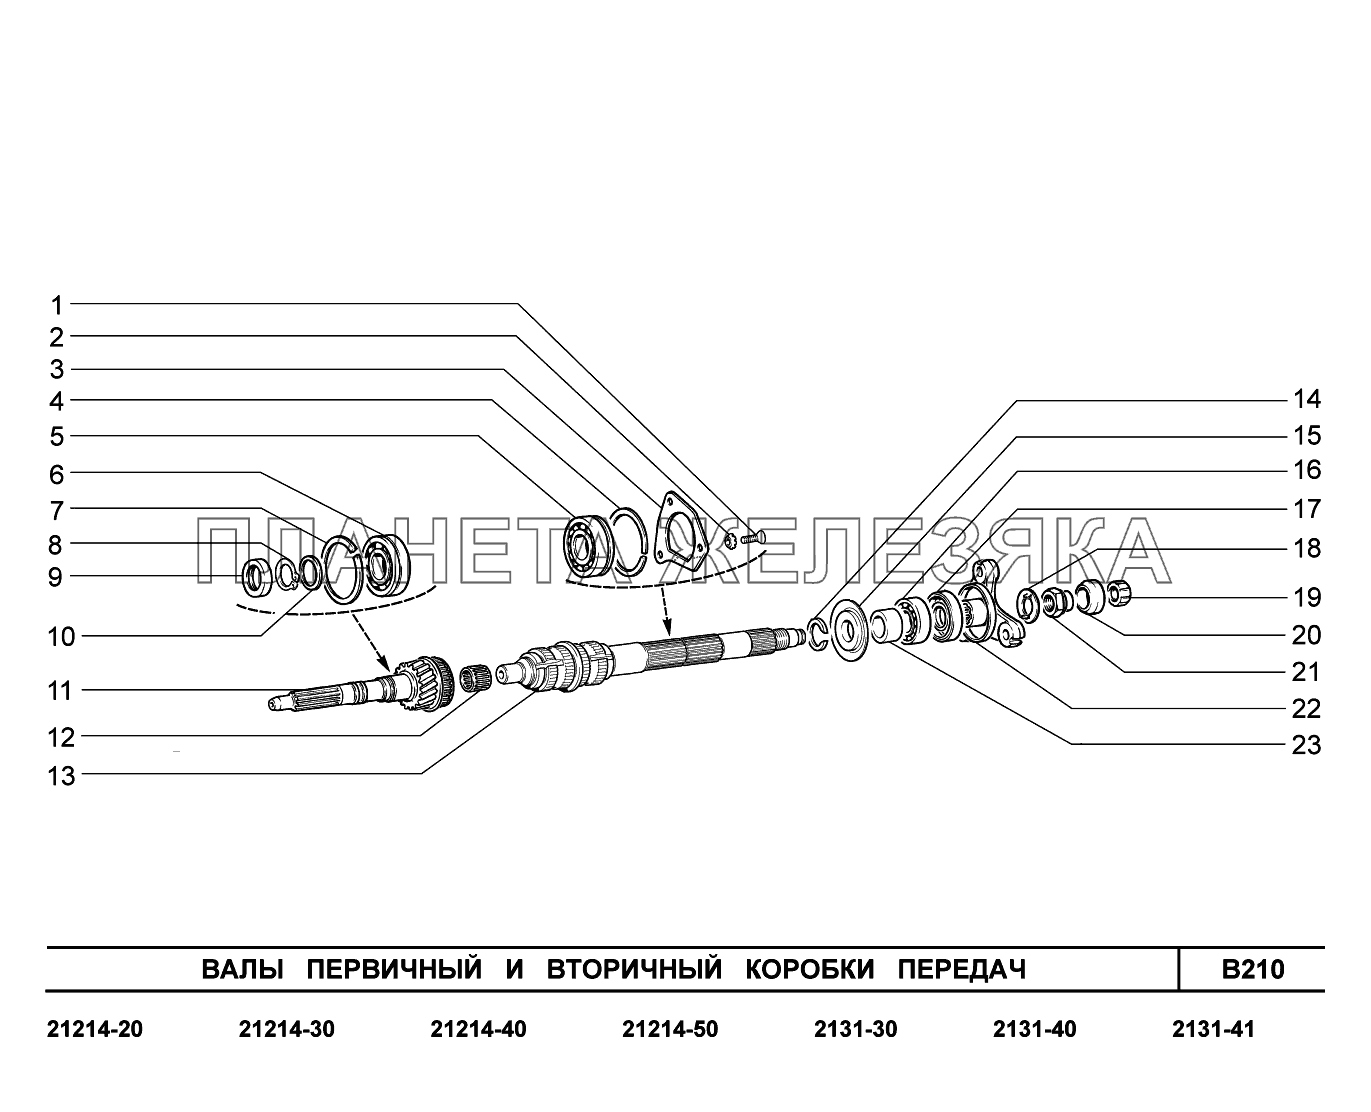 B210. Валы первичный и вторичный коробки передач LADA 4x4